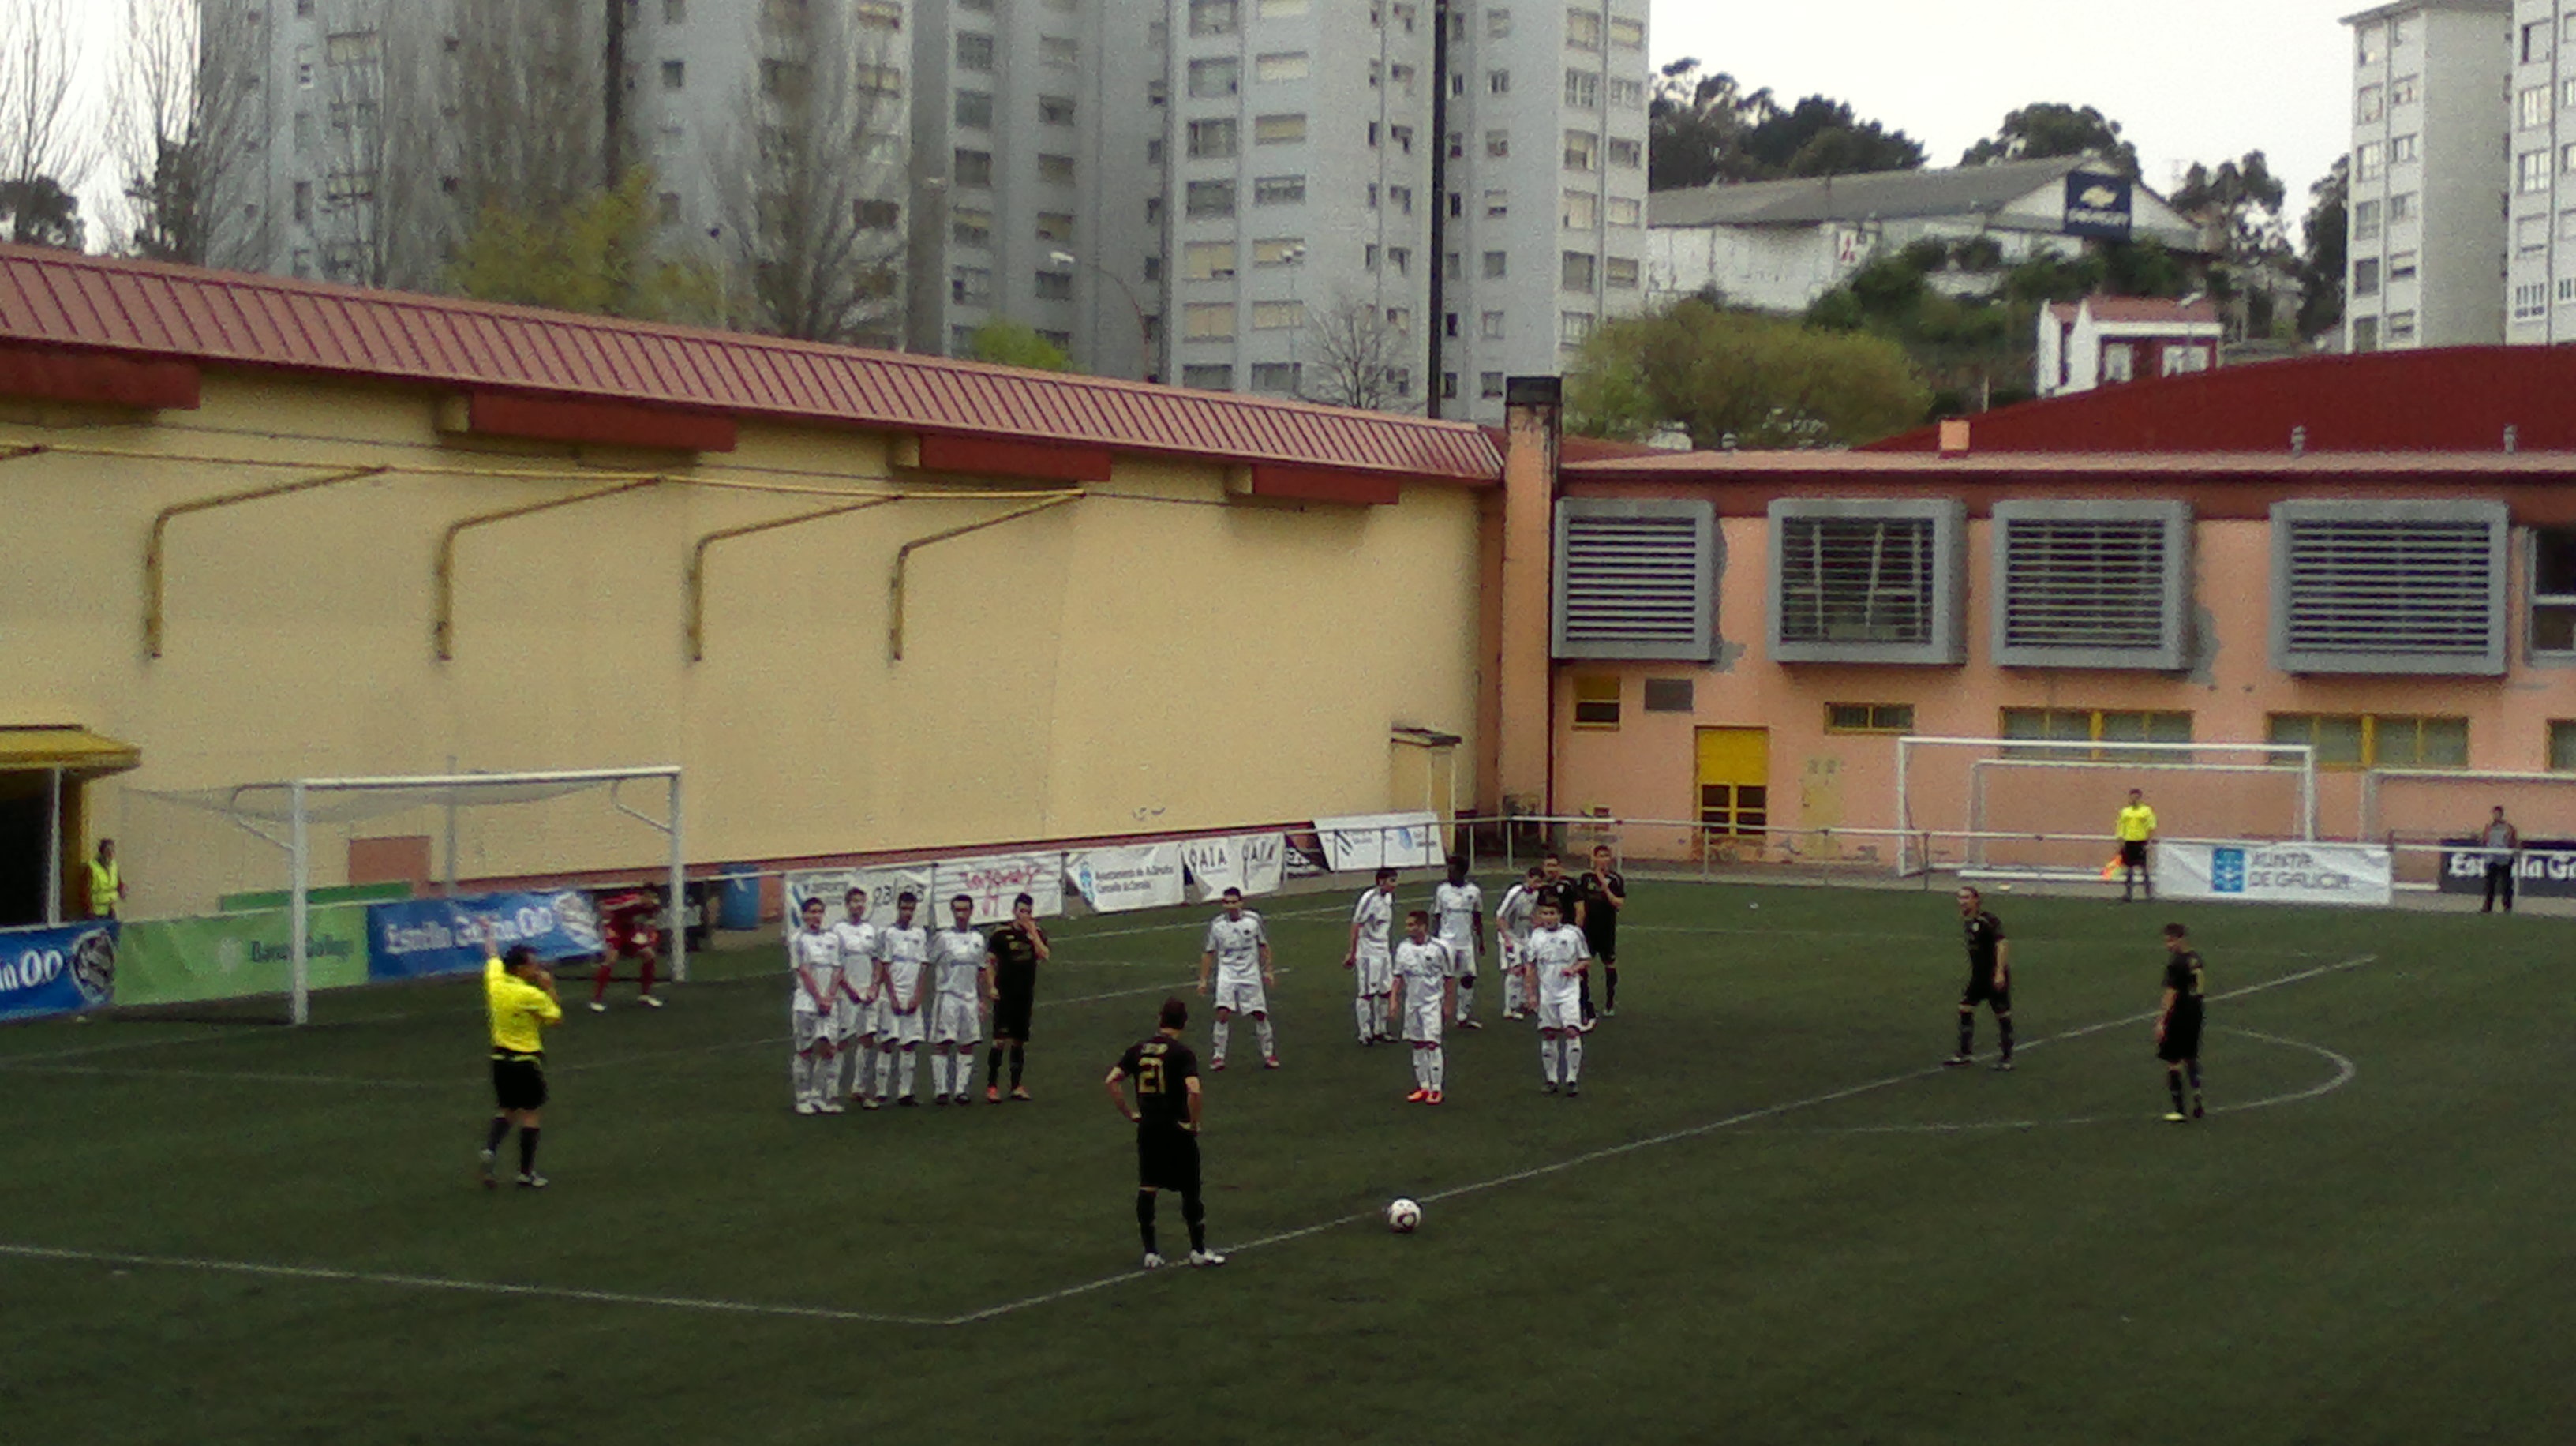 Gol falta Lugo; Montañeros 0-1 Lugo